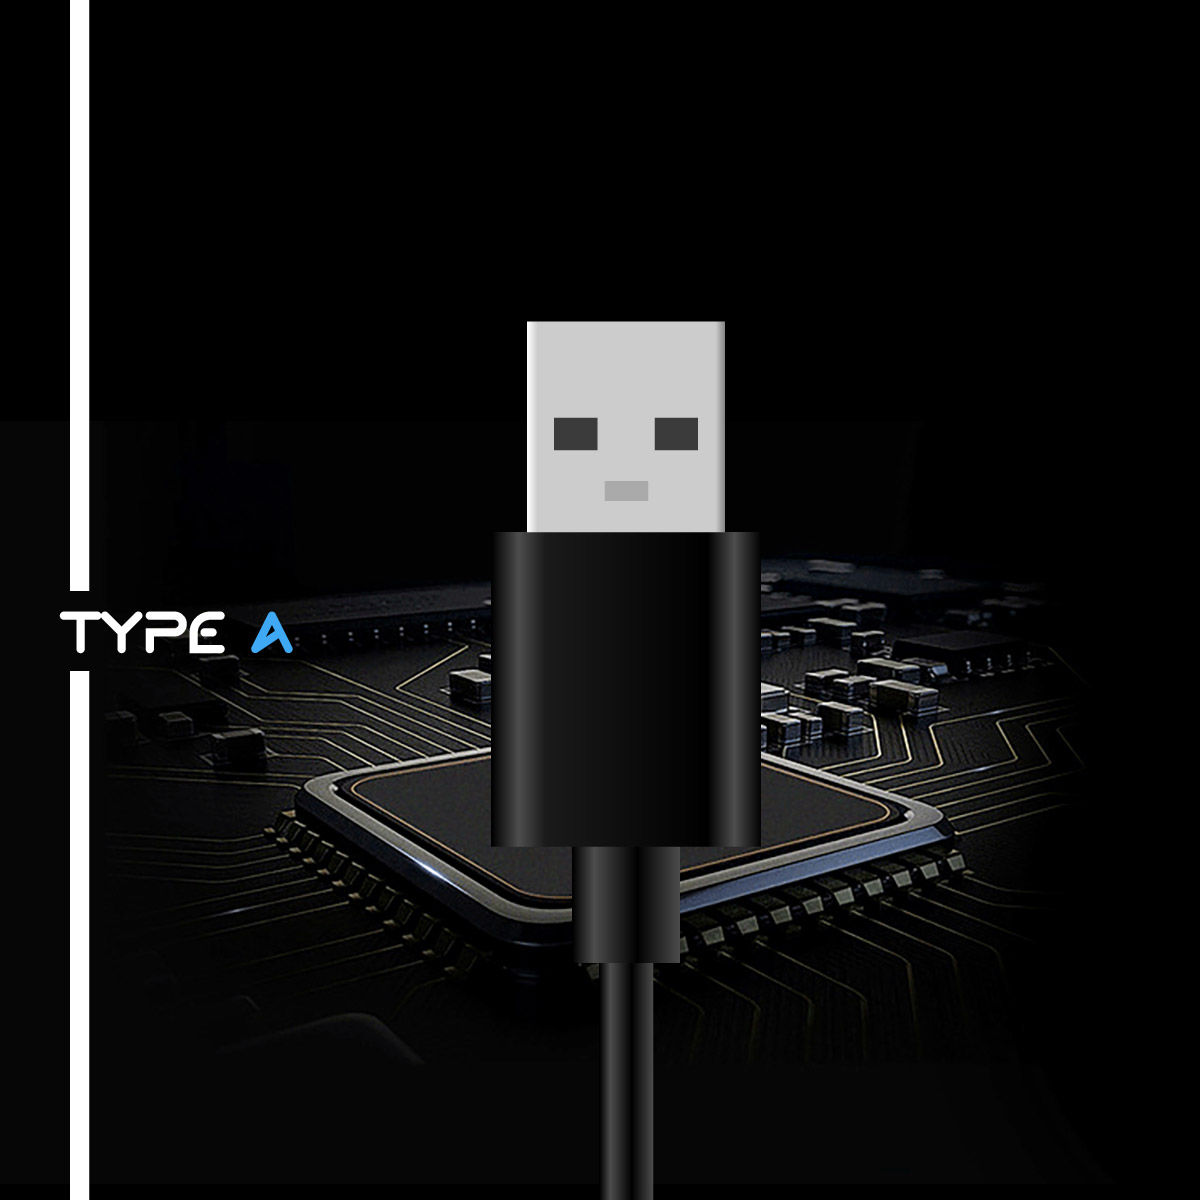 USBハブ 3.0 type-c type-a usb3.0 4ポート タイプC タイプA 薄型 スマホ充電 給電 軽量設計 usbポート USB拡張  接続 コンパクト 4in1 高速 Macbook Windows